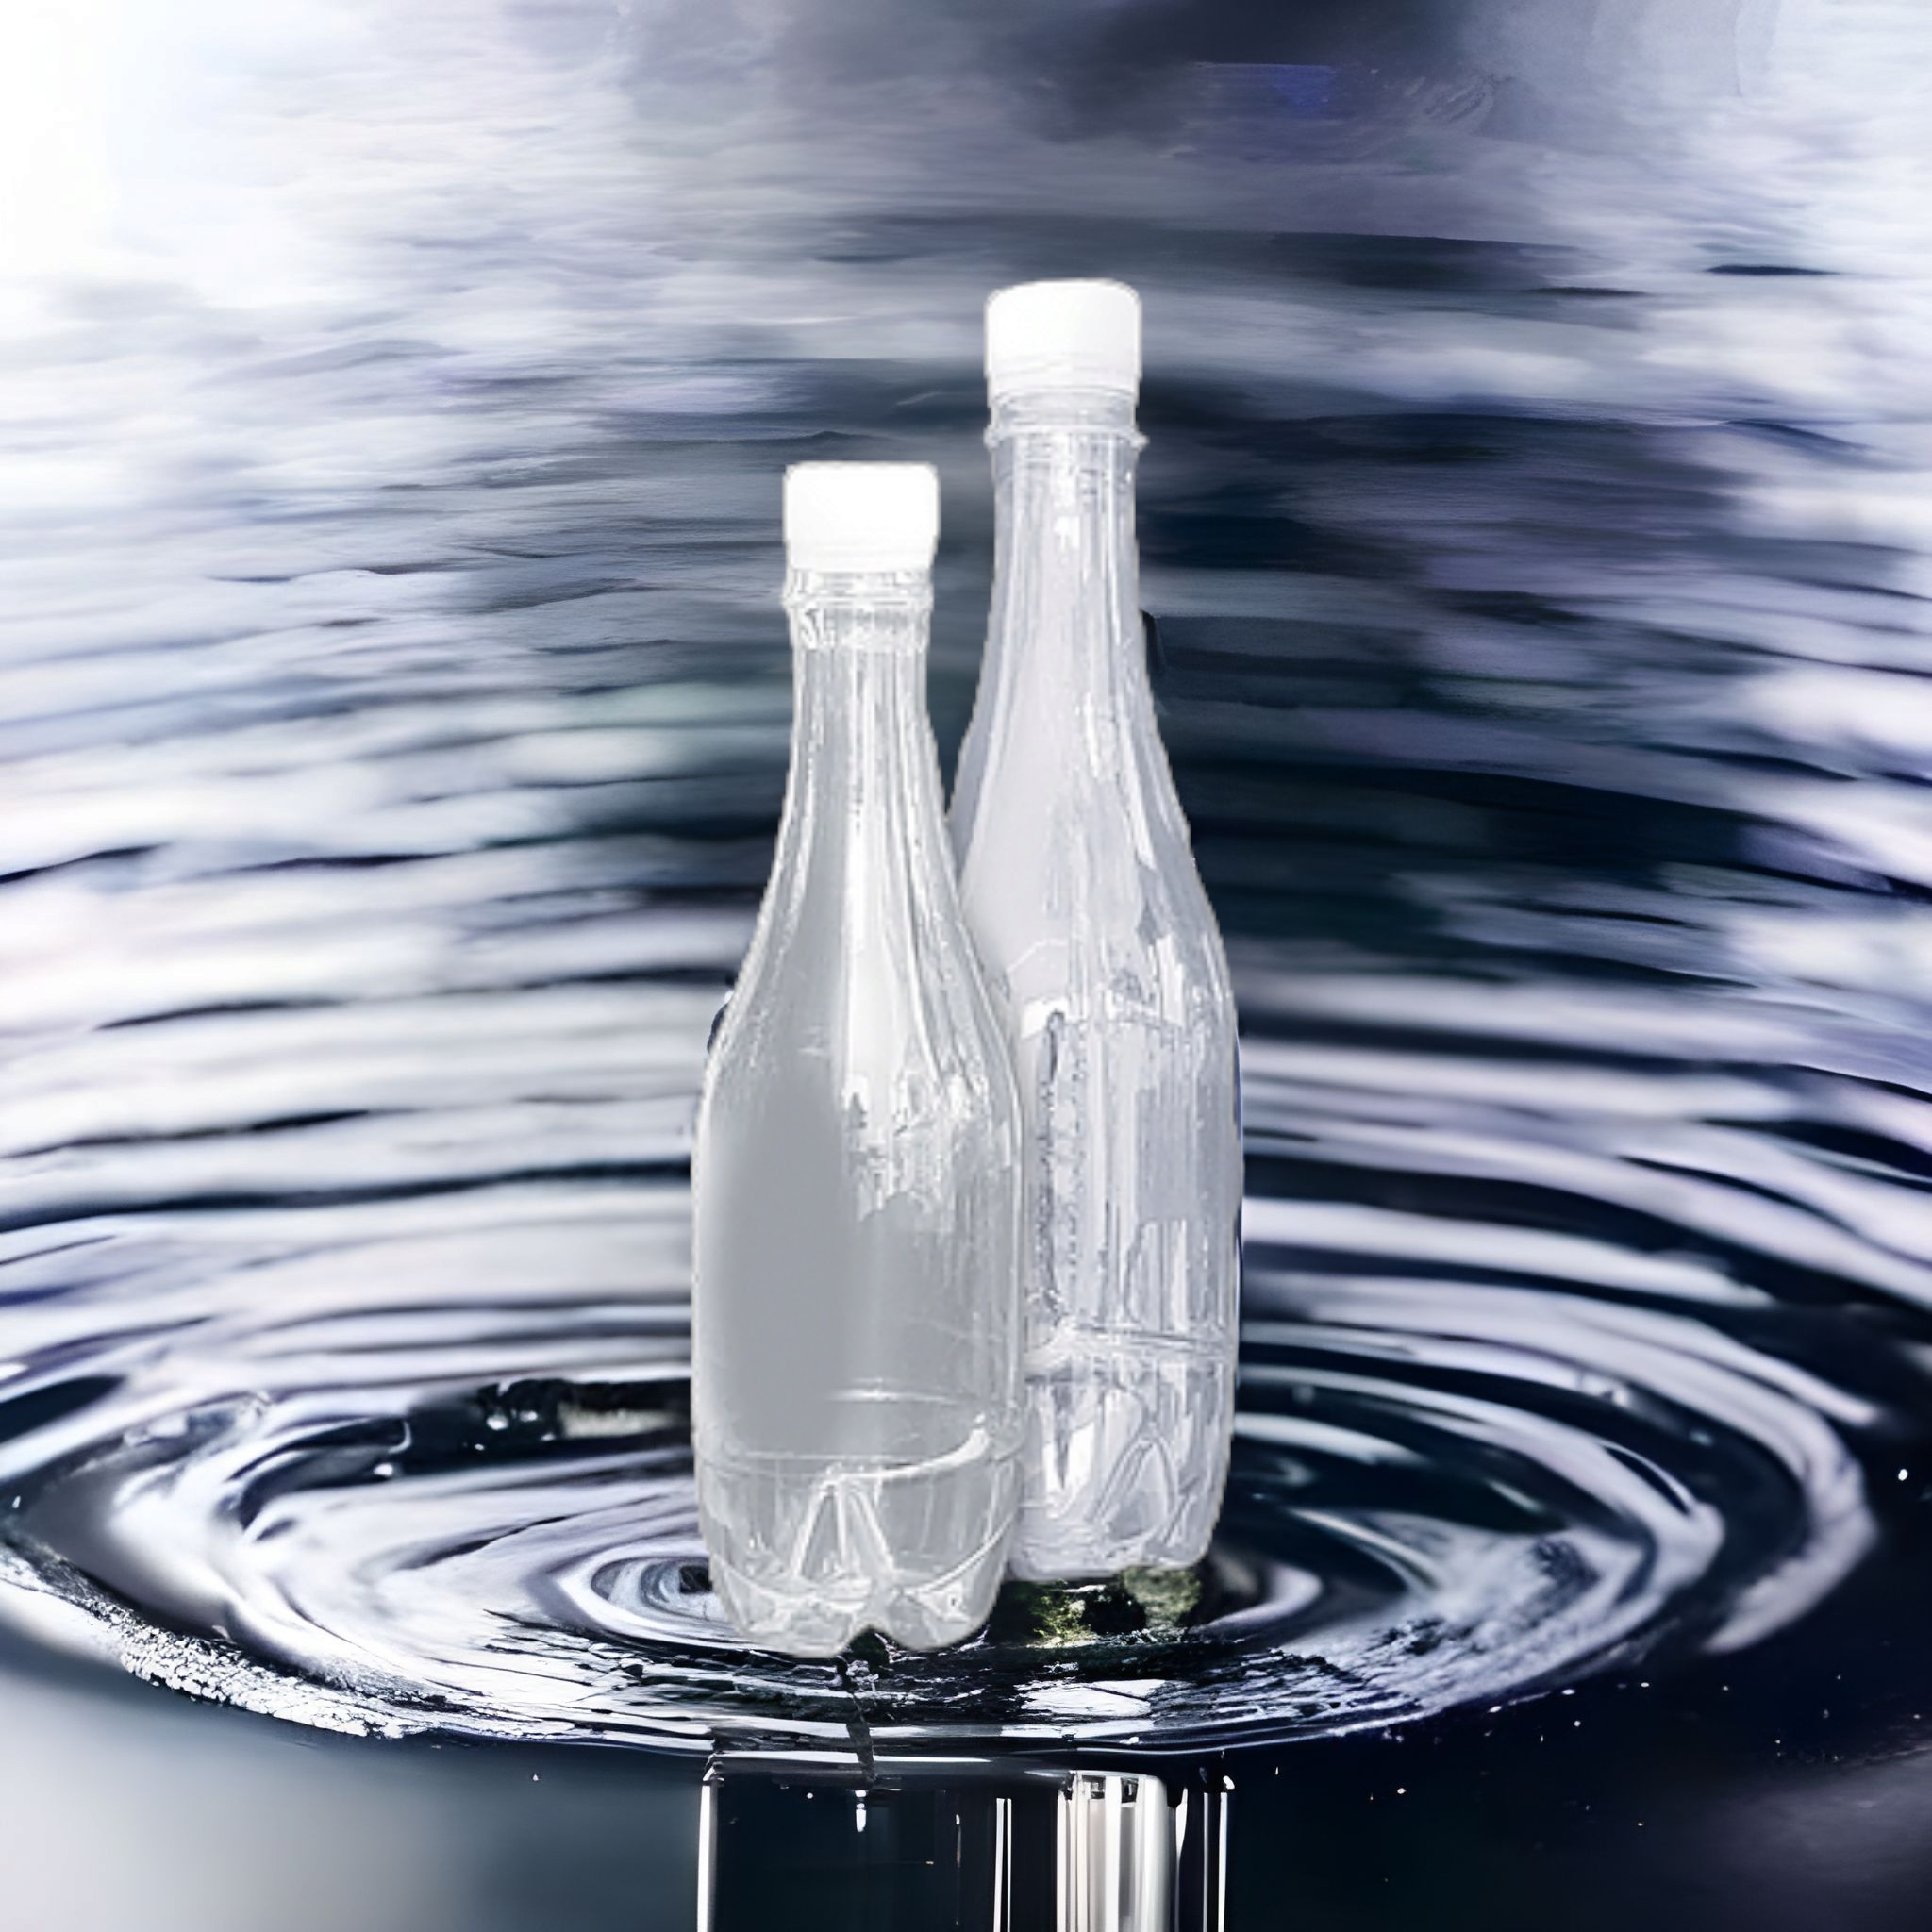 500ml Plastic Teardrop Water Bottle Clear with Lid BOT121